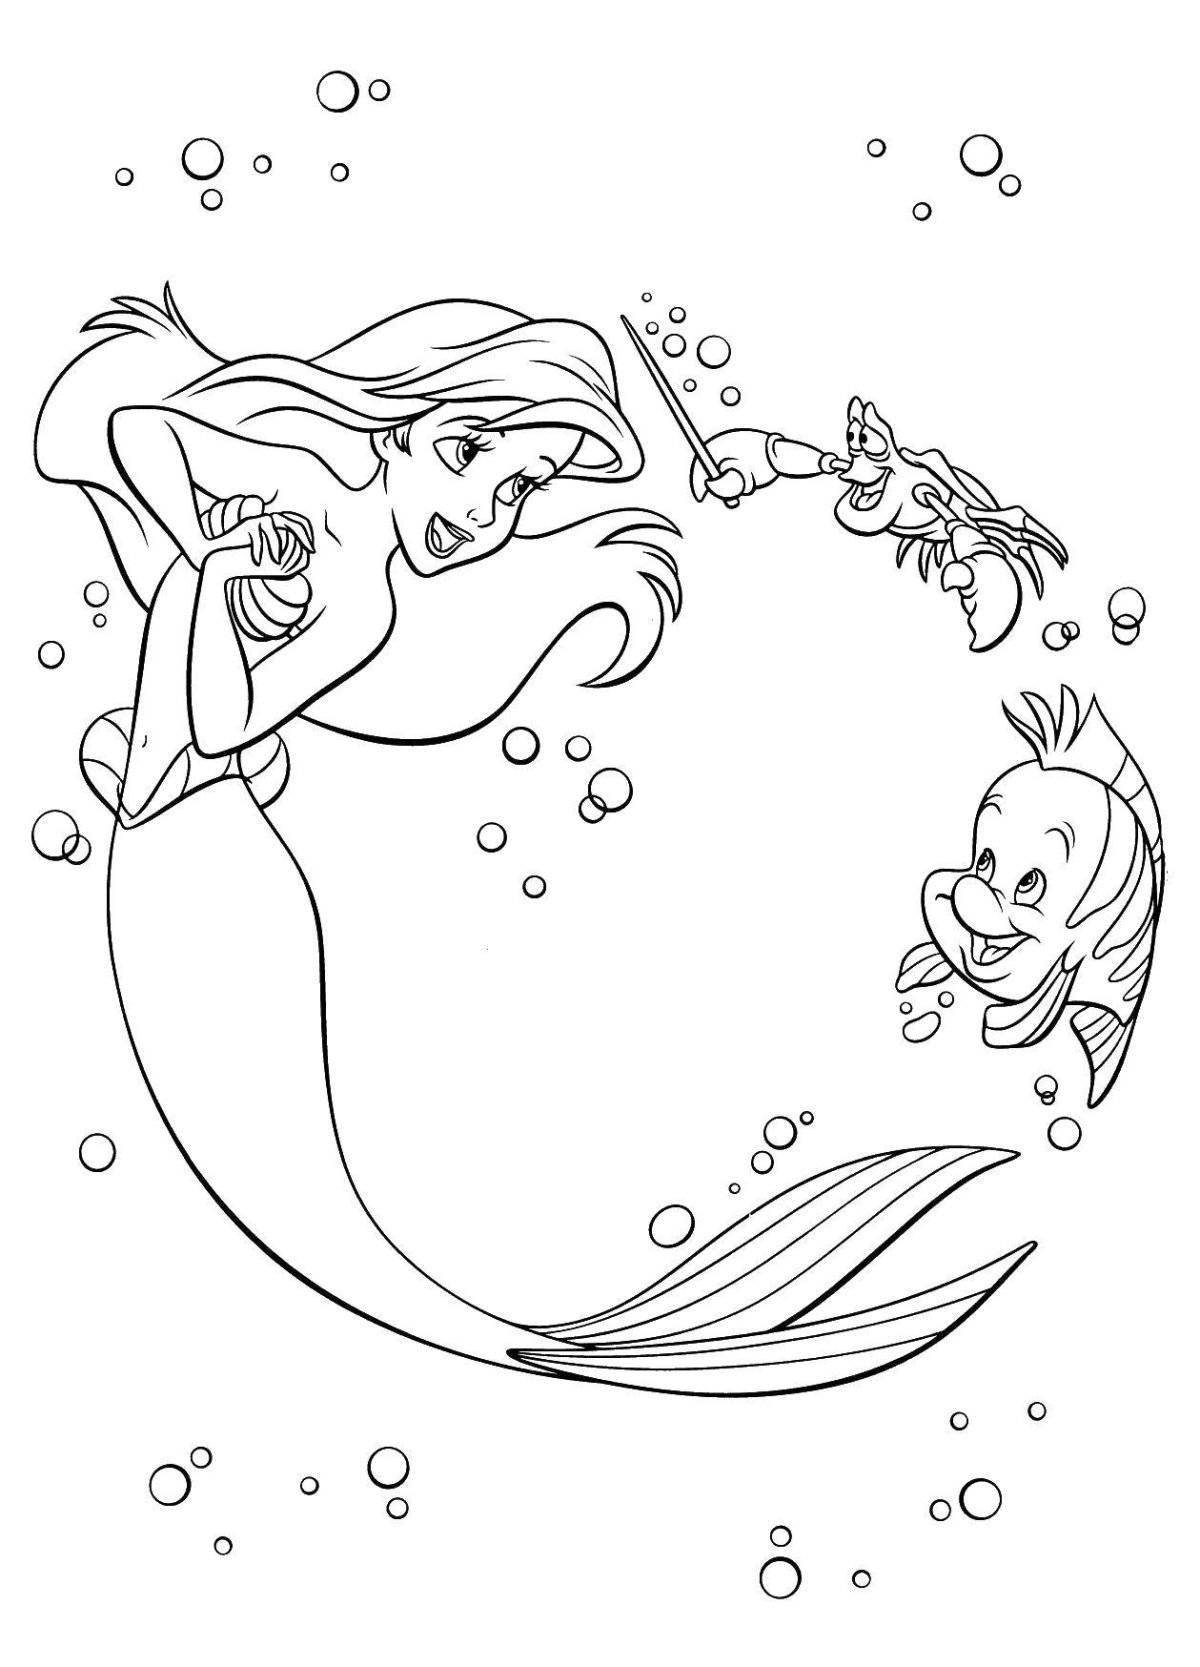 Fun coloring mermaid by numbers